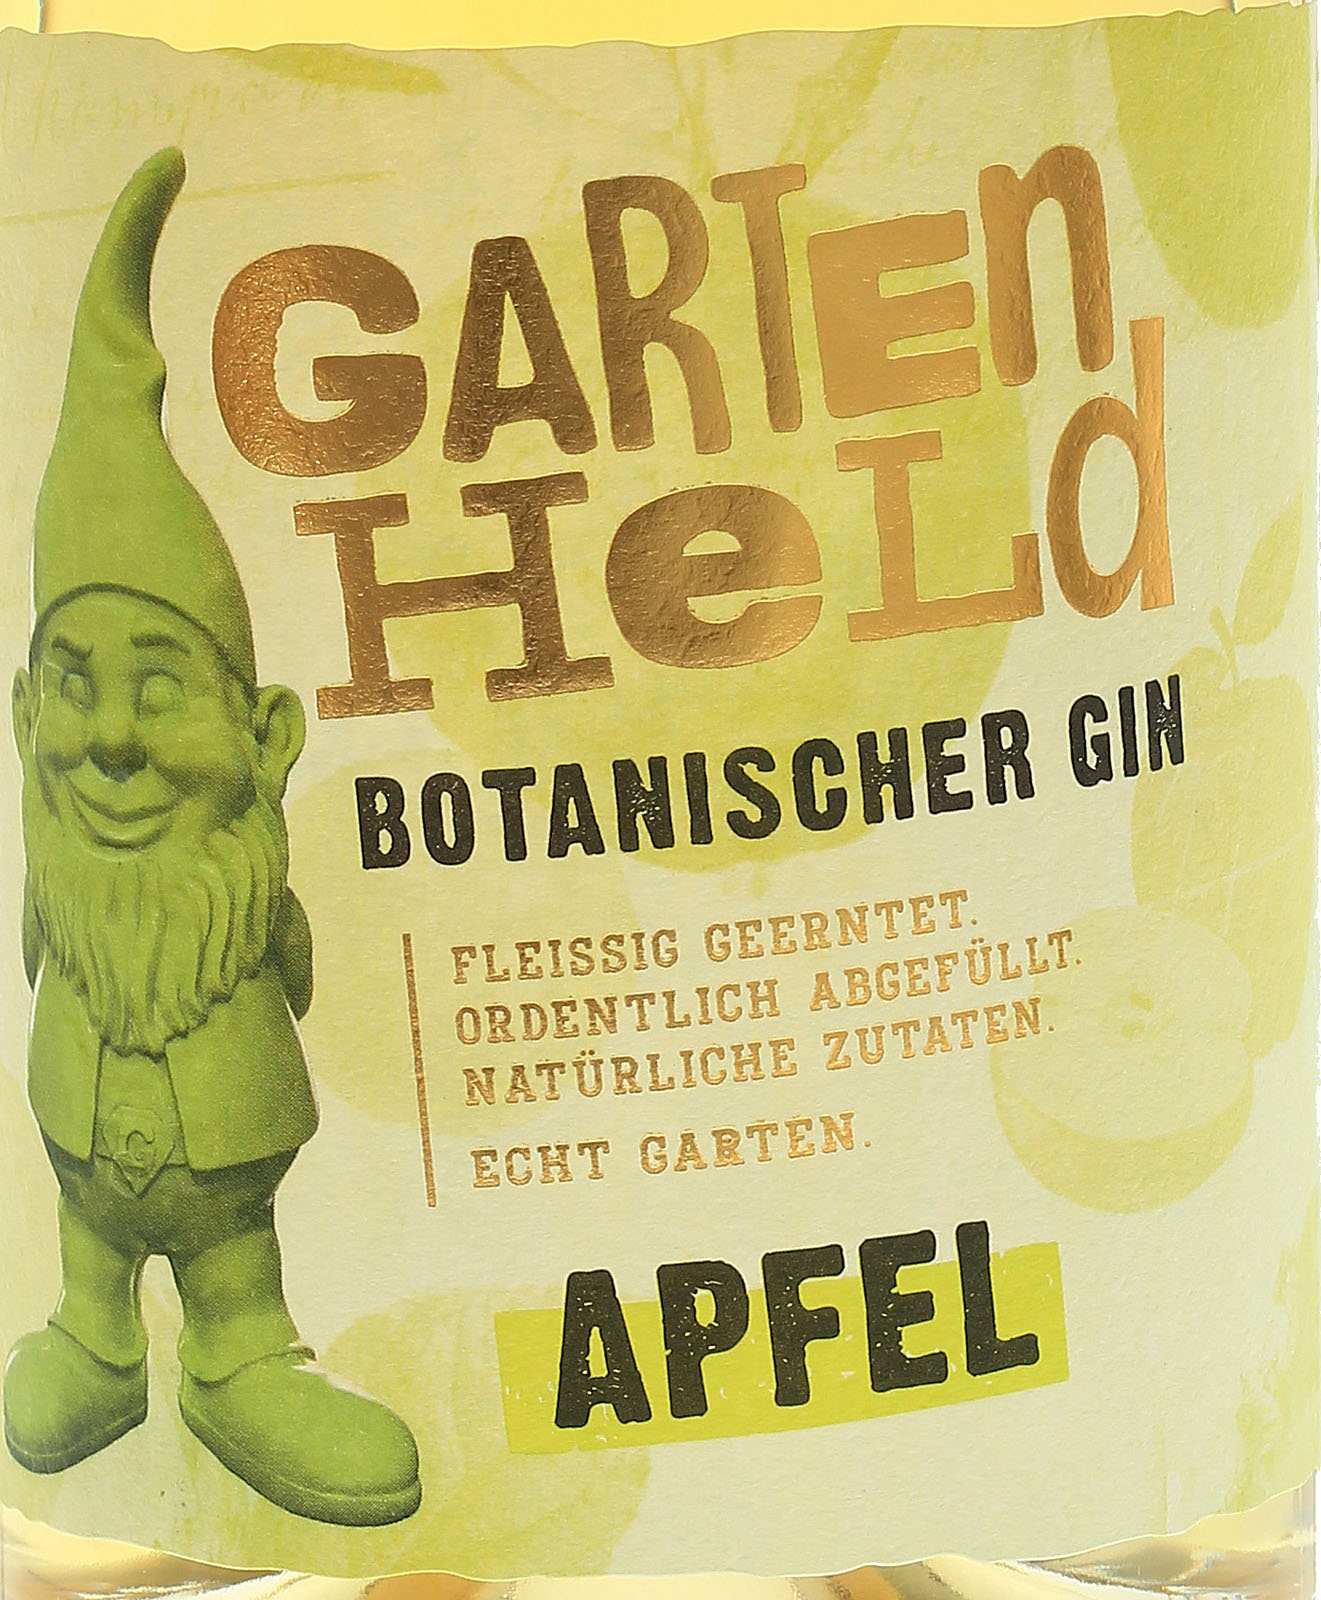 Gartenheld Botanischer Gin Apfel - Bei uns im Shop kauf